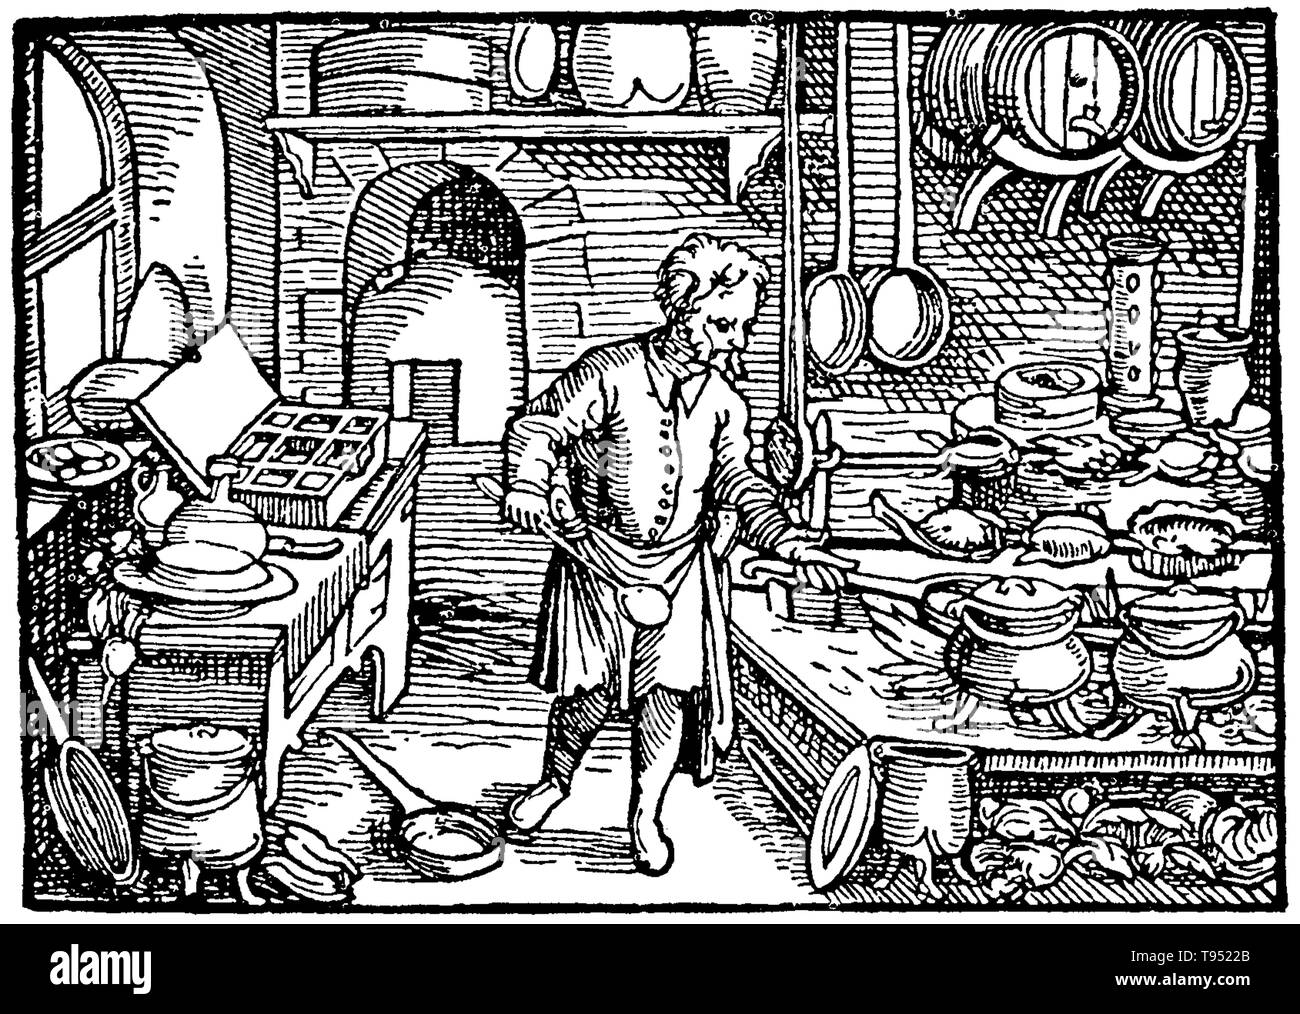 Nella maggior parte delle famiglie medievali, la cottura è stata eseguita su un focolare aperto nel centro della principale area soggiorno, a fare un uso efficiente del calore. Questo è stato il più comune dispositivo anche in famiglie benestanti, dove la cucina è stato combinato con la sala da pranzo. Verso la fine del Medioevo una cucina separata area iniziarono ad evolversi. Foto Stock